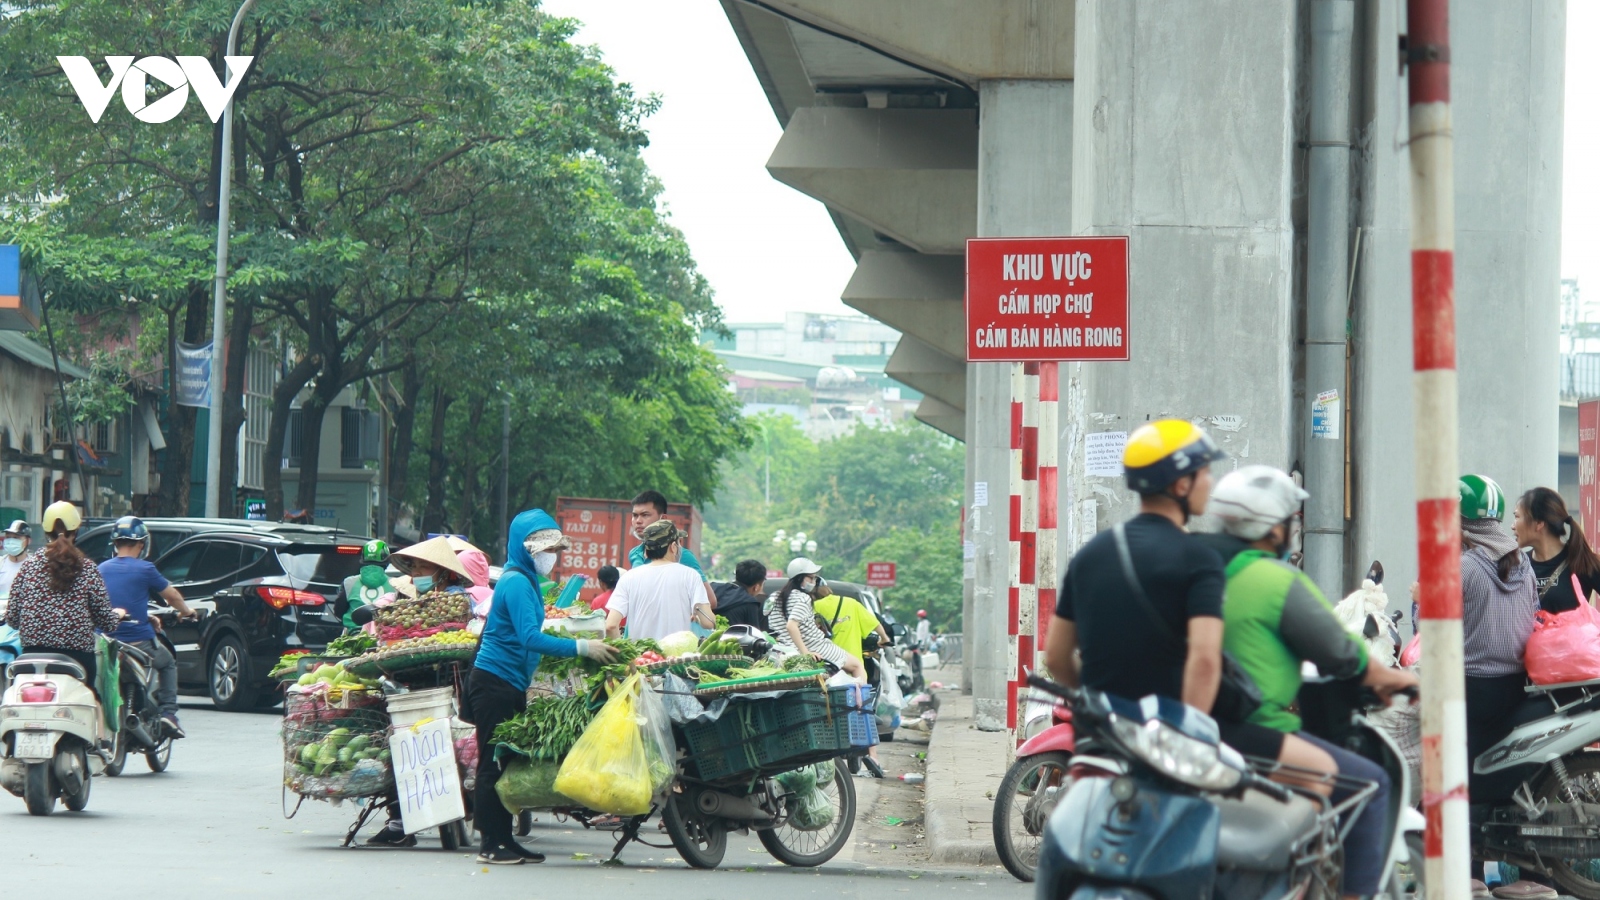 Nhan nhản chợ cóc chiếm dụng lòng đường trên nhiều tuyến phố Hà Nội